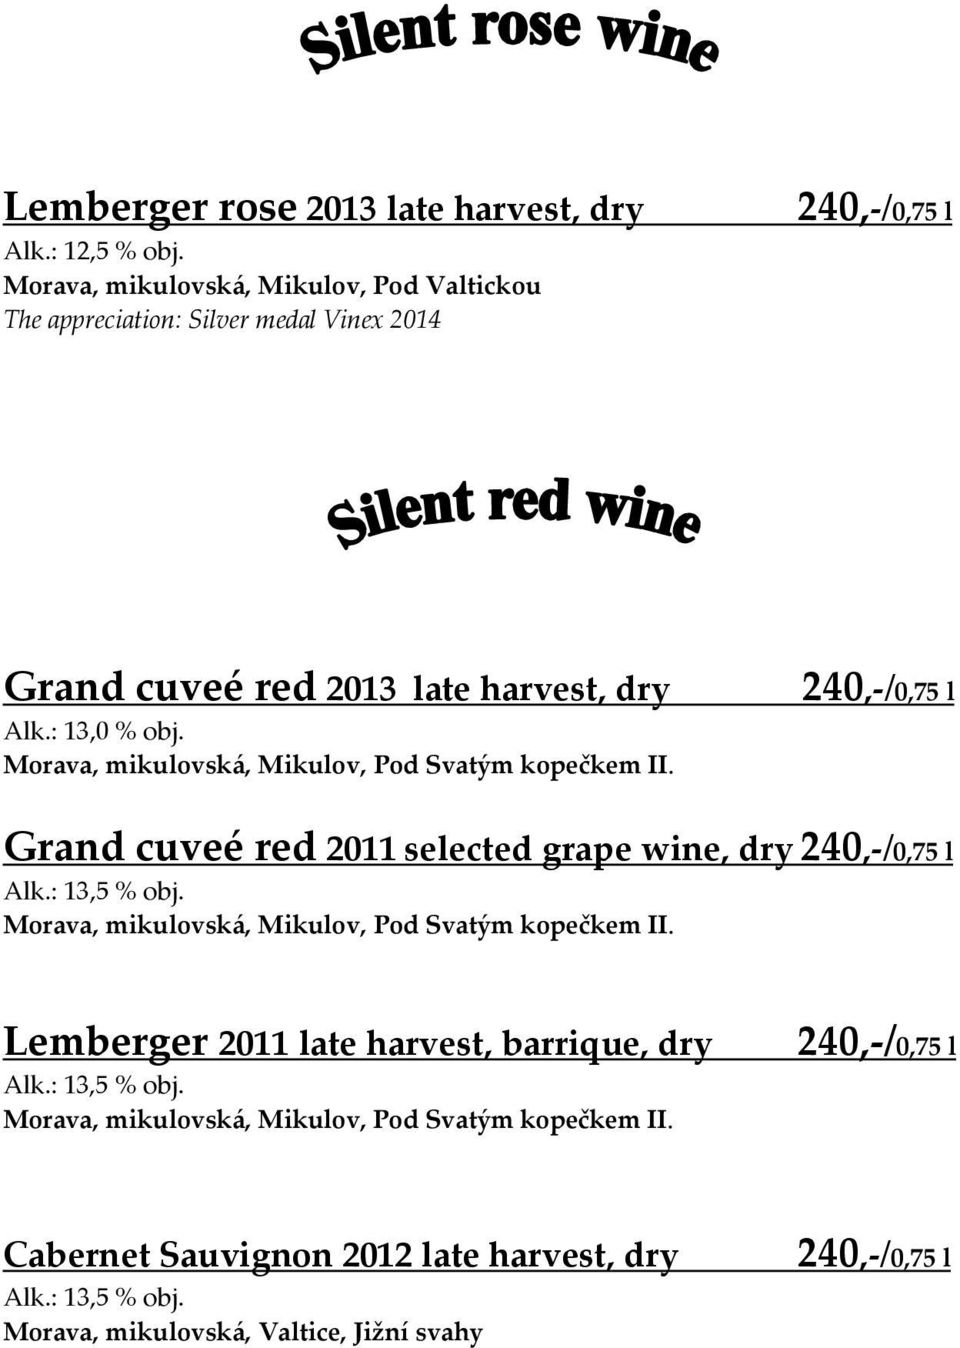 Grand cuveé red 2011 selected grape wine, dry Morava, mikulovská, Mikulov, Pod Svatým kopečkem II.